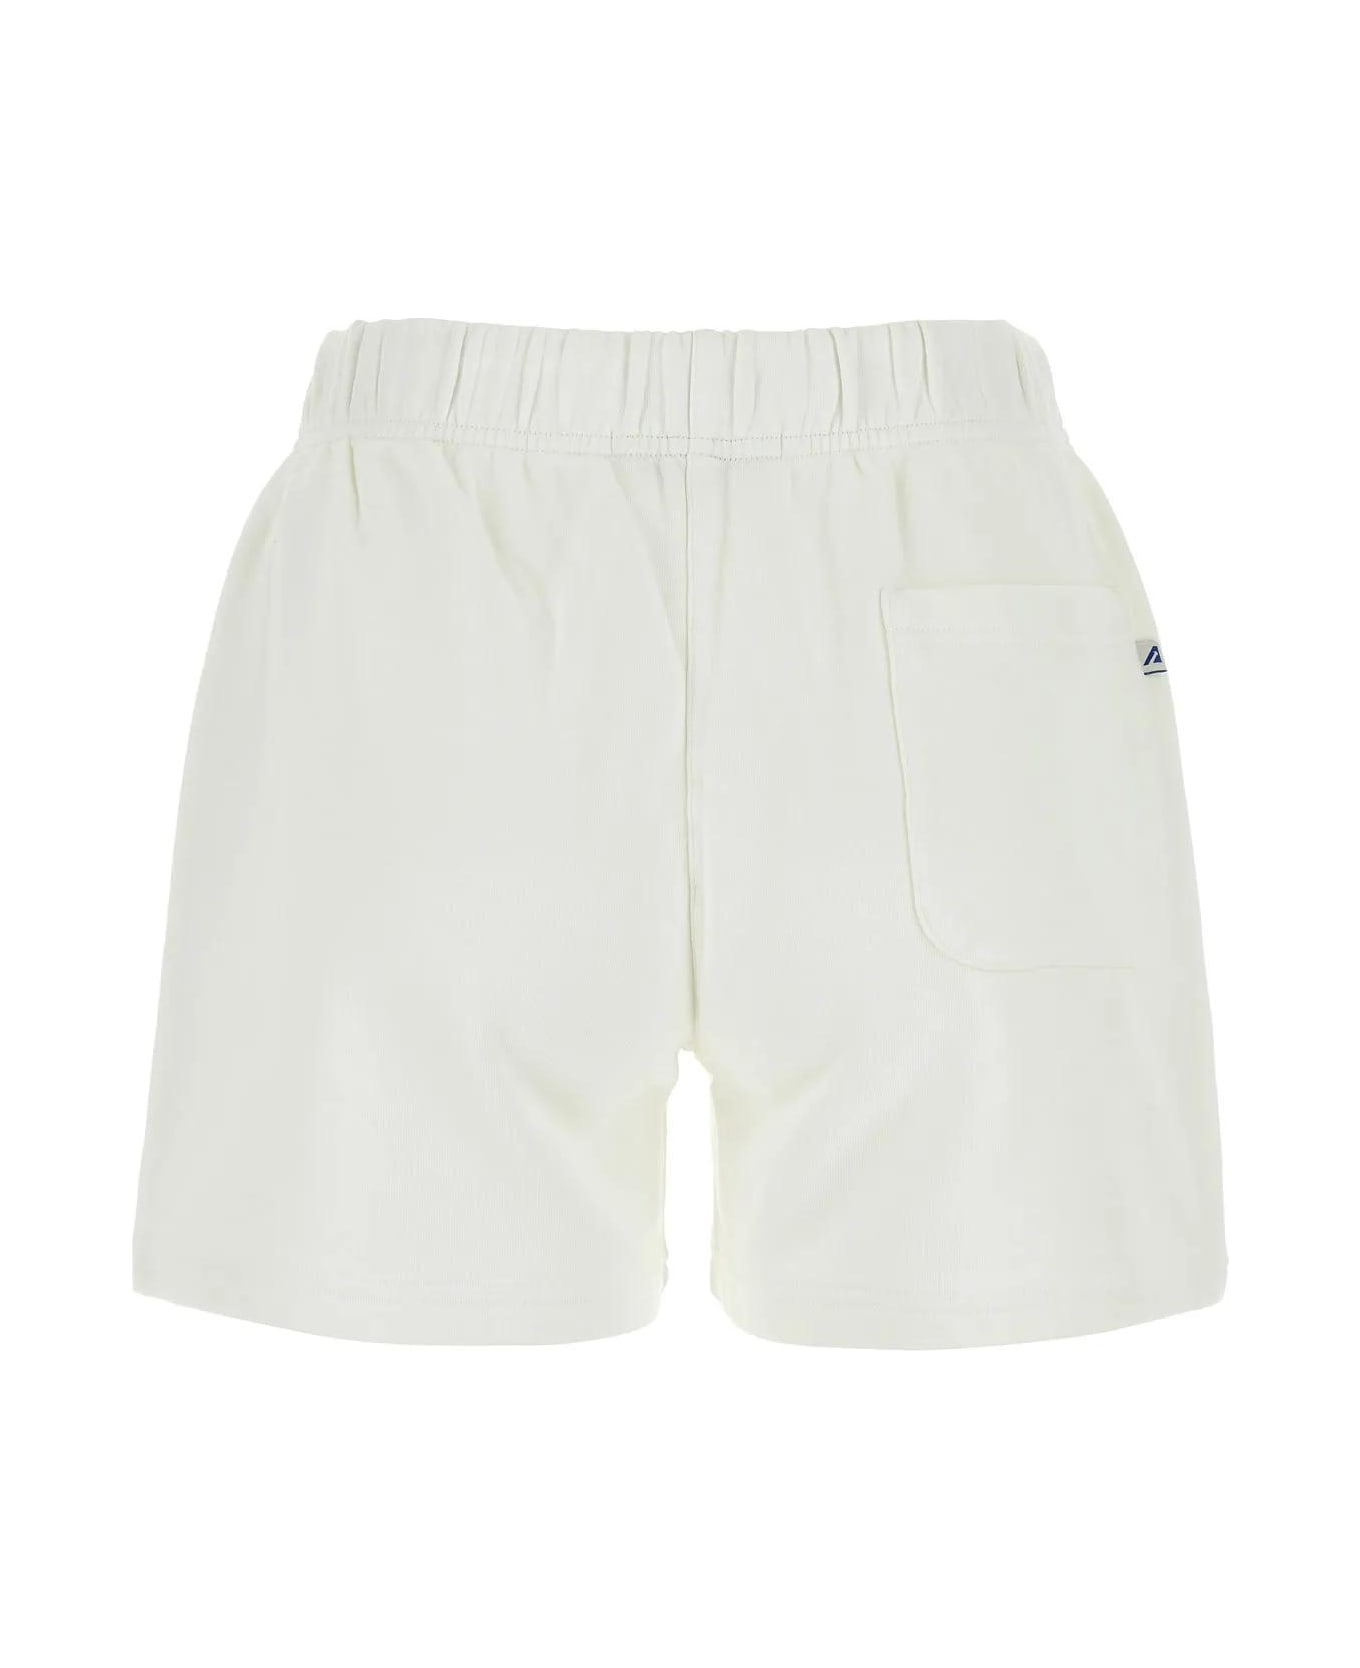 Autry White Cotton Shorts ショートパンツ